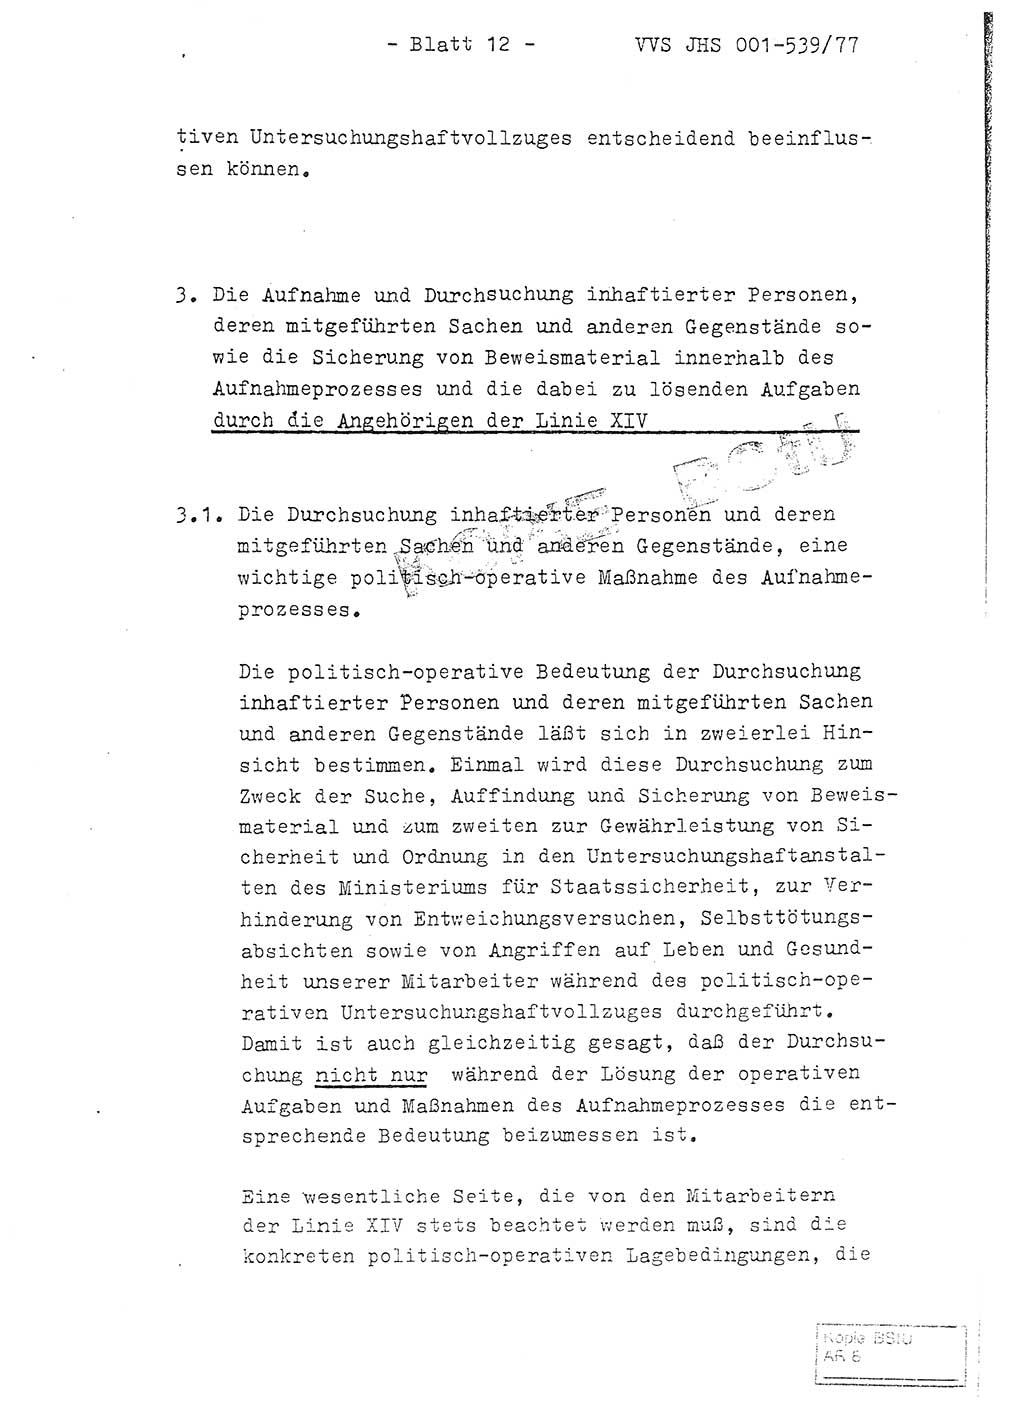 Fachschulabschlußarbeit Hauptmann Dietrich Jung (Abt. ⅩⅣ), Leutnant Klaus Klötzner (Abt. ⅩⅣ), Ministerium für Staatssicherheit (MfS) [Deutsche Demokratische Republik (DDR)], Juristische Hochschule (JHS), Vertrauliche Verschlußsache (VVS) 001-539/77, Potsdam 1978, Seite 12 (FS-Abschl.-Arb. MfS DDR JHS VVS 001-539/77 1978, S. 12)